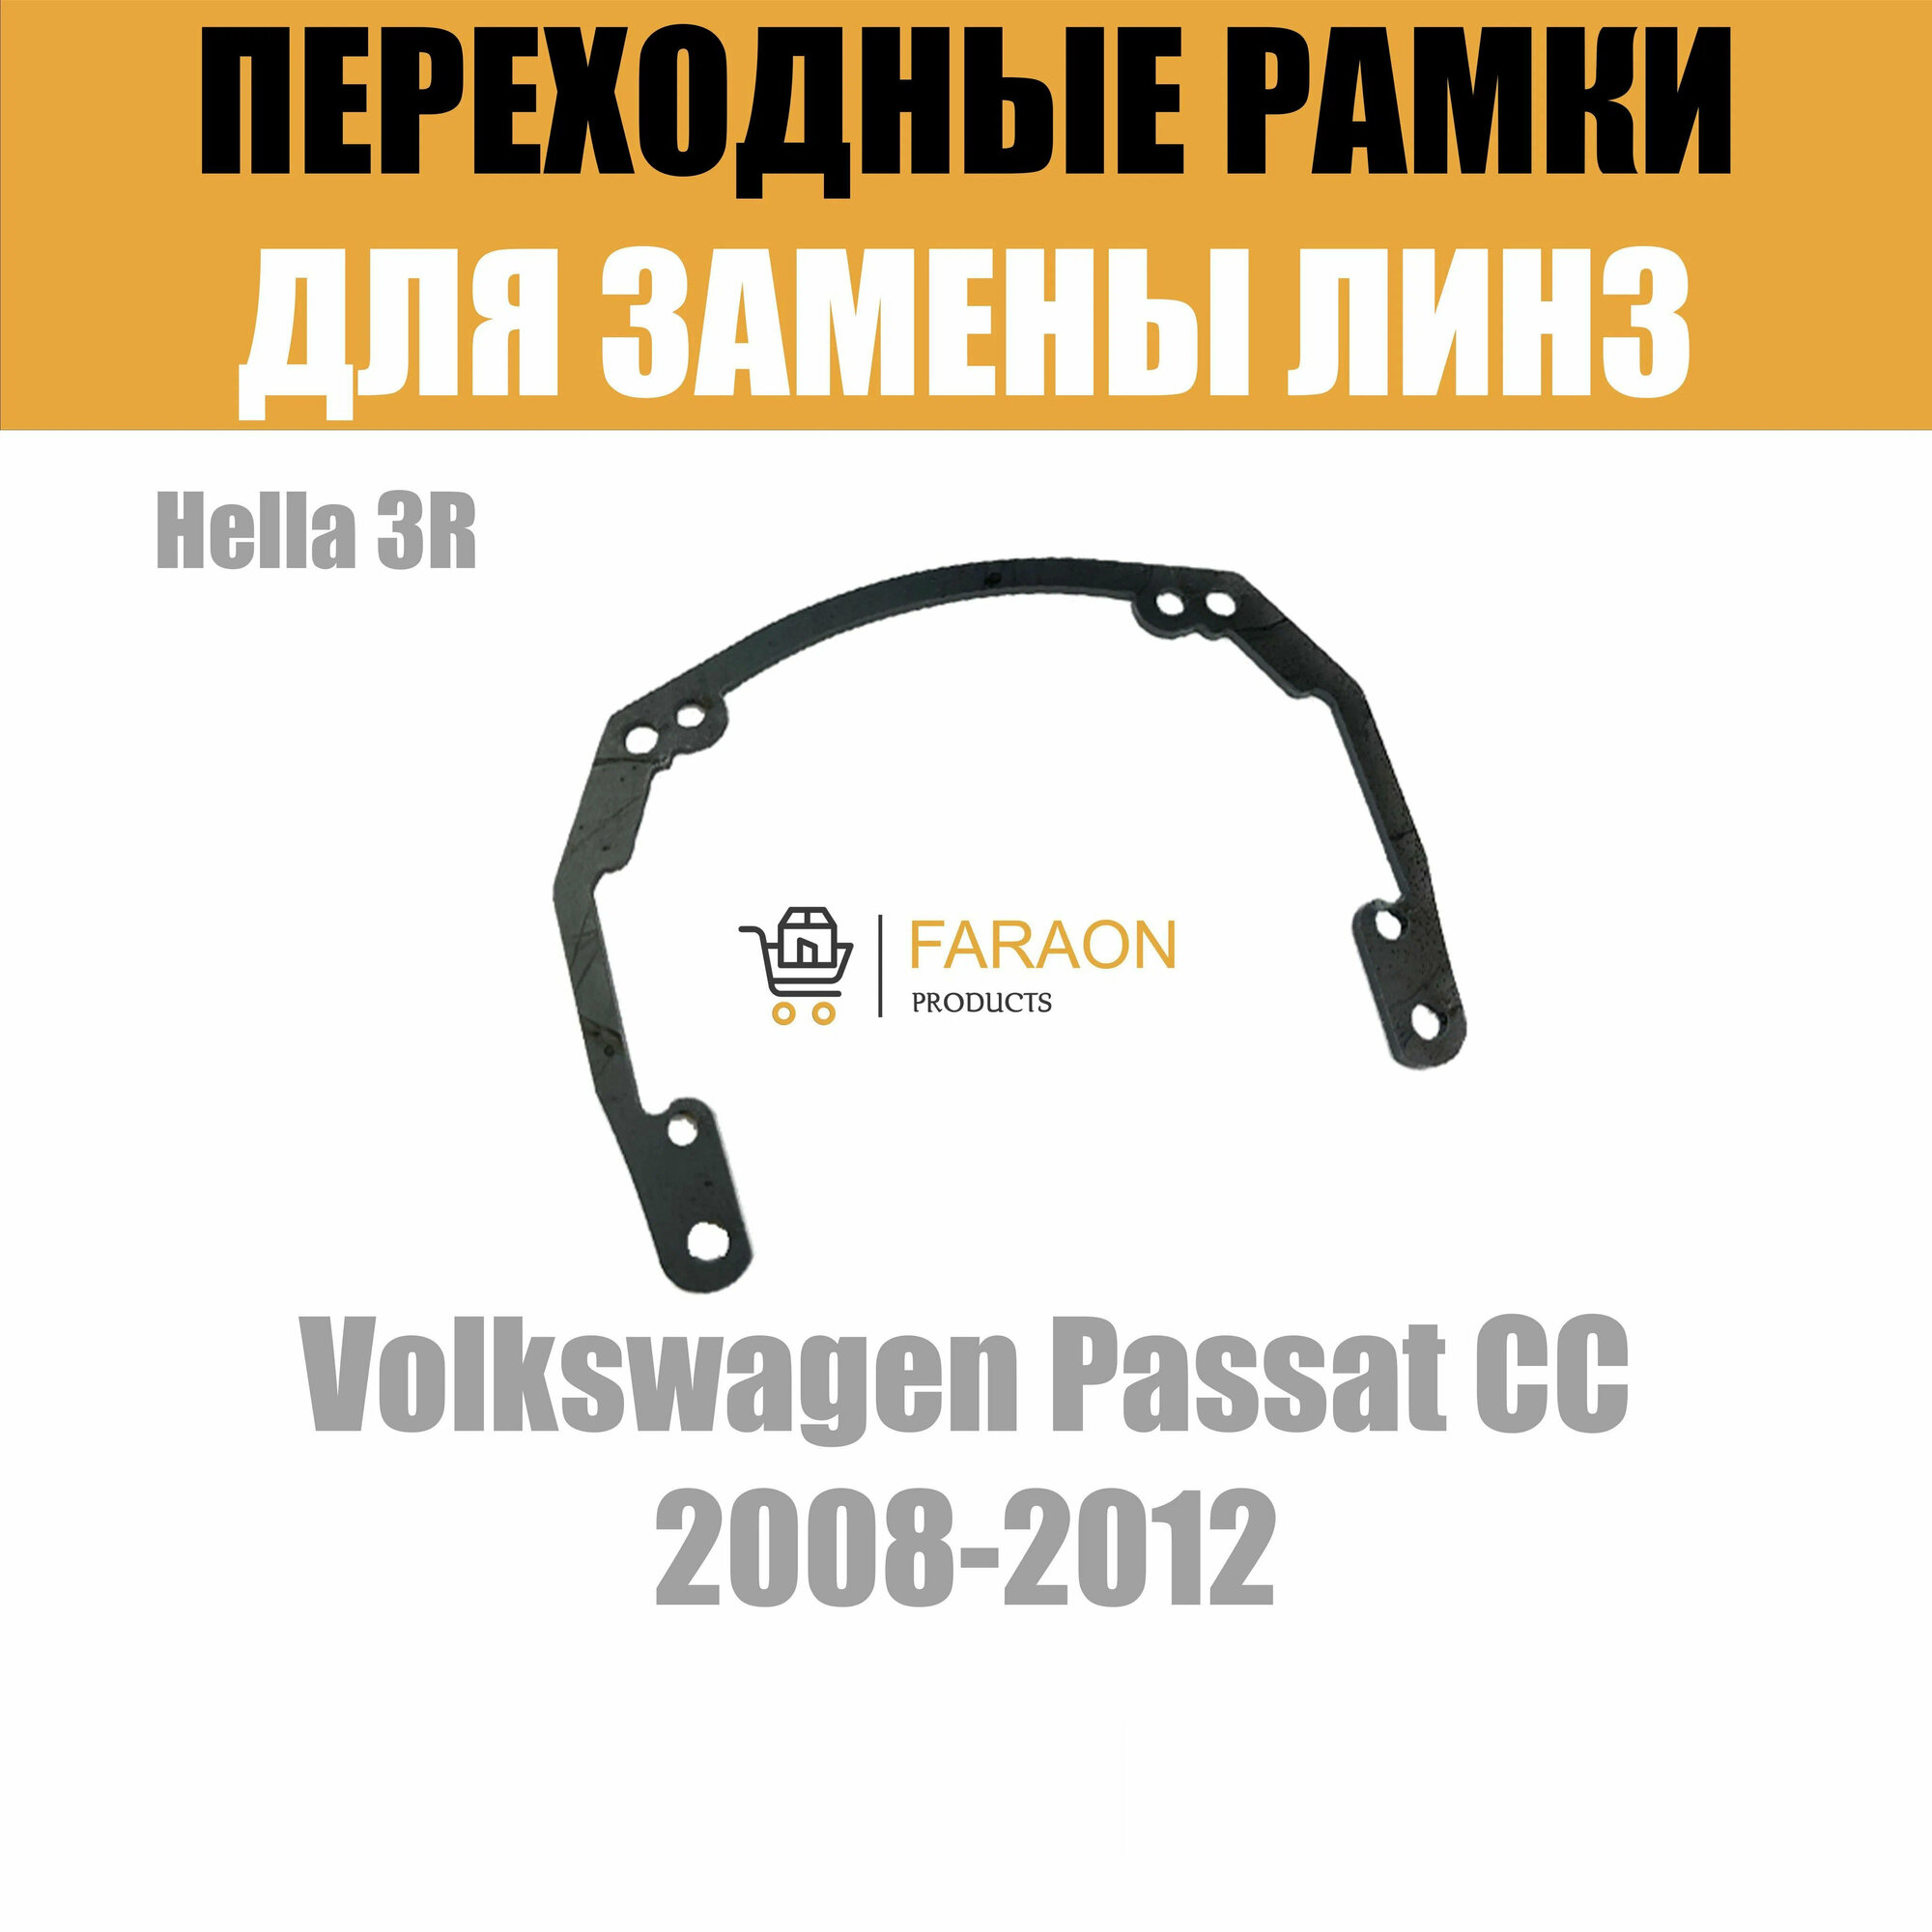 Переходные рамки для замены линз в фарах Volkswagen Passat CC 2008-2012 Крепление Hella 3R